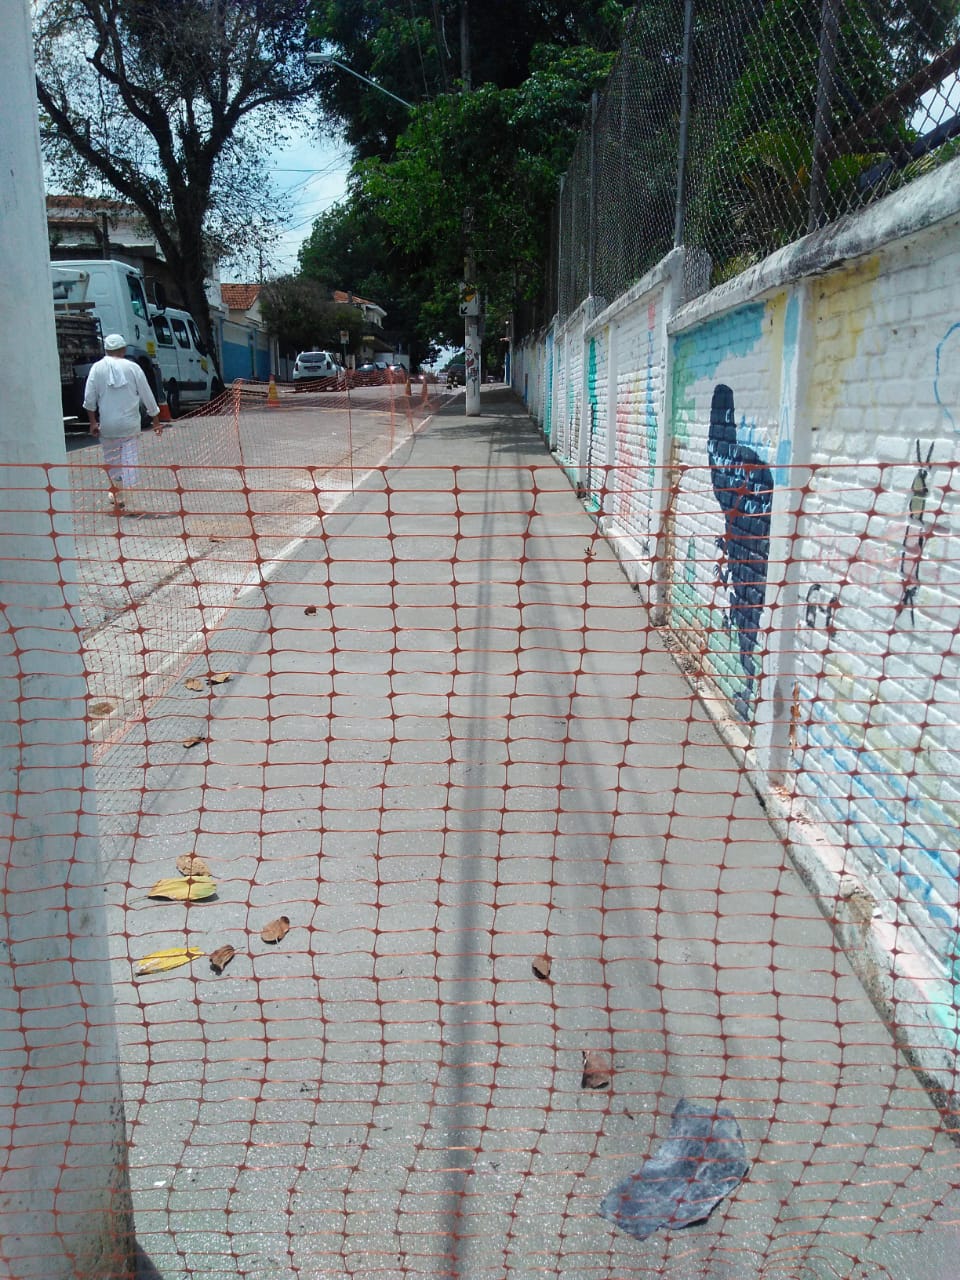 #PraCegoVer - Passeio já cimentado em frente a muro pintado com desenhos. O local está protegido com uma tela de plástico, que impede a passagem de pedestres, até o cimento secar.